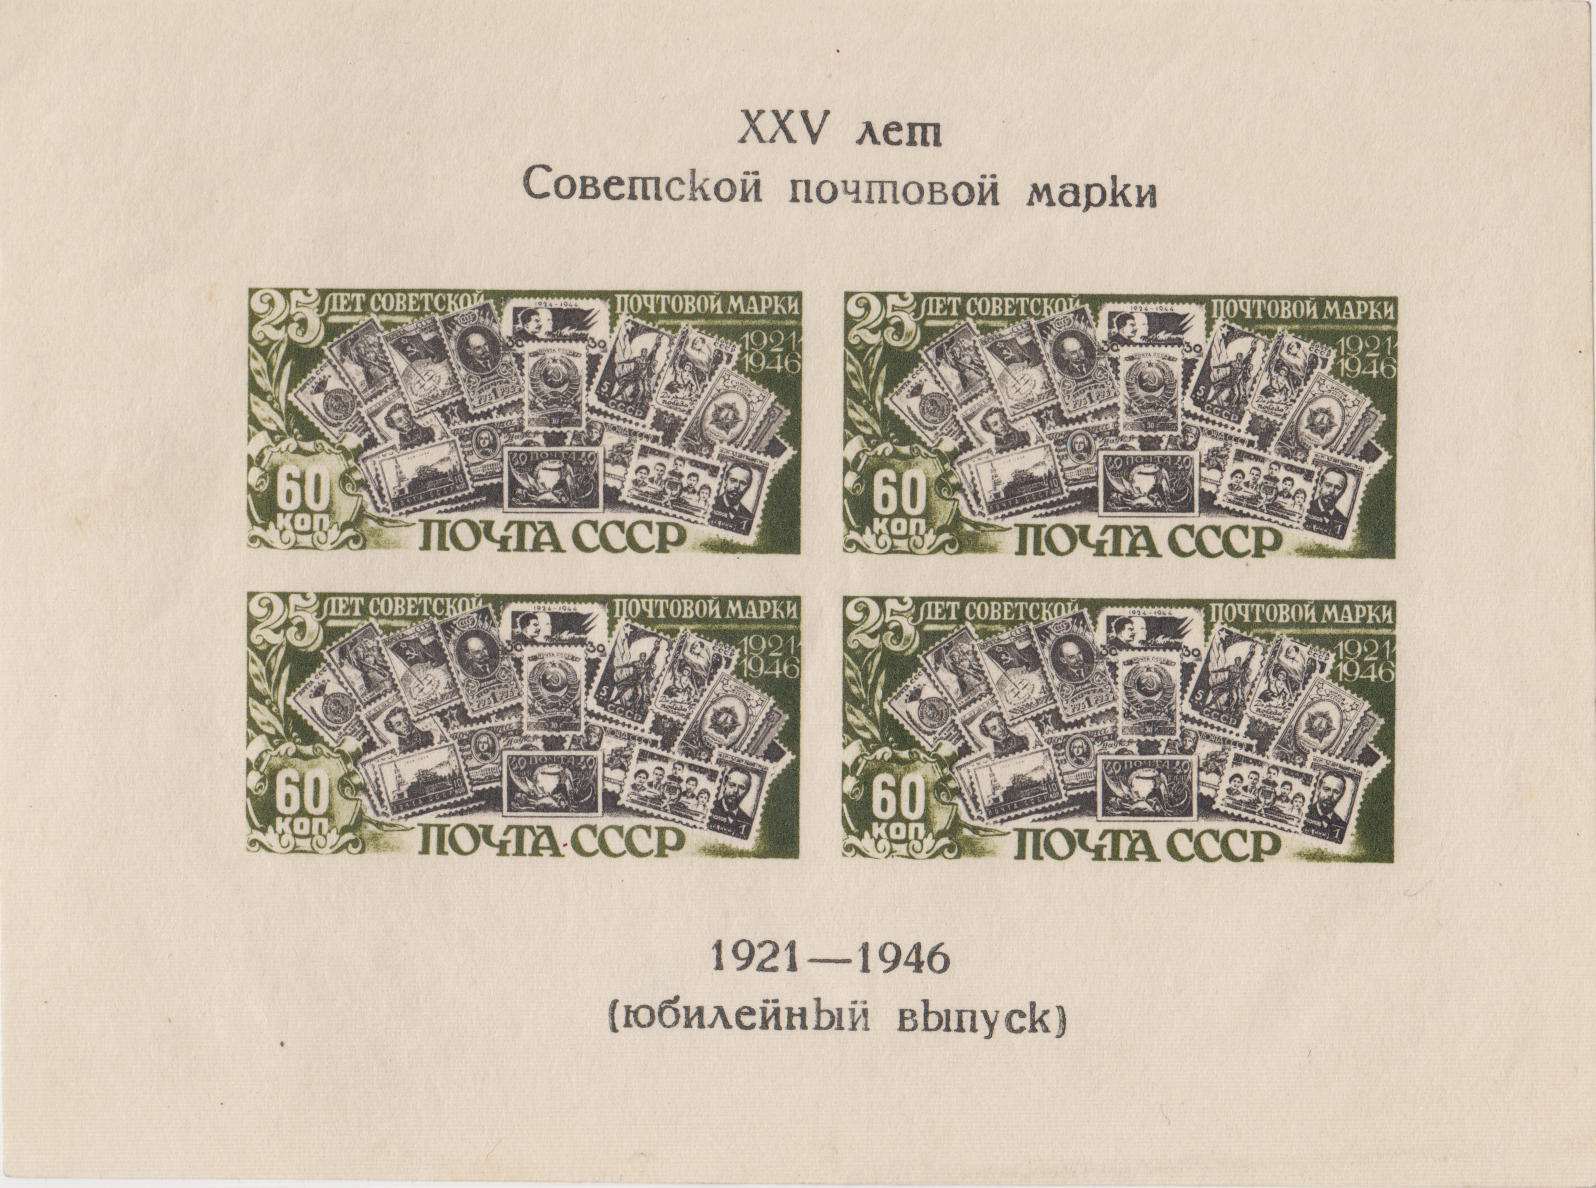 Изображения советских почтовых марок. Блок